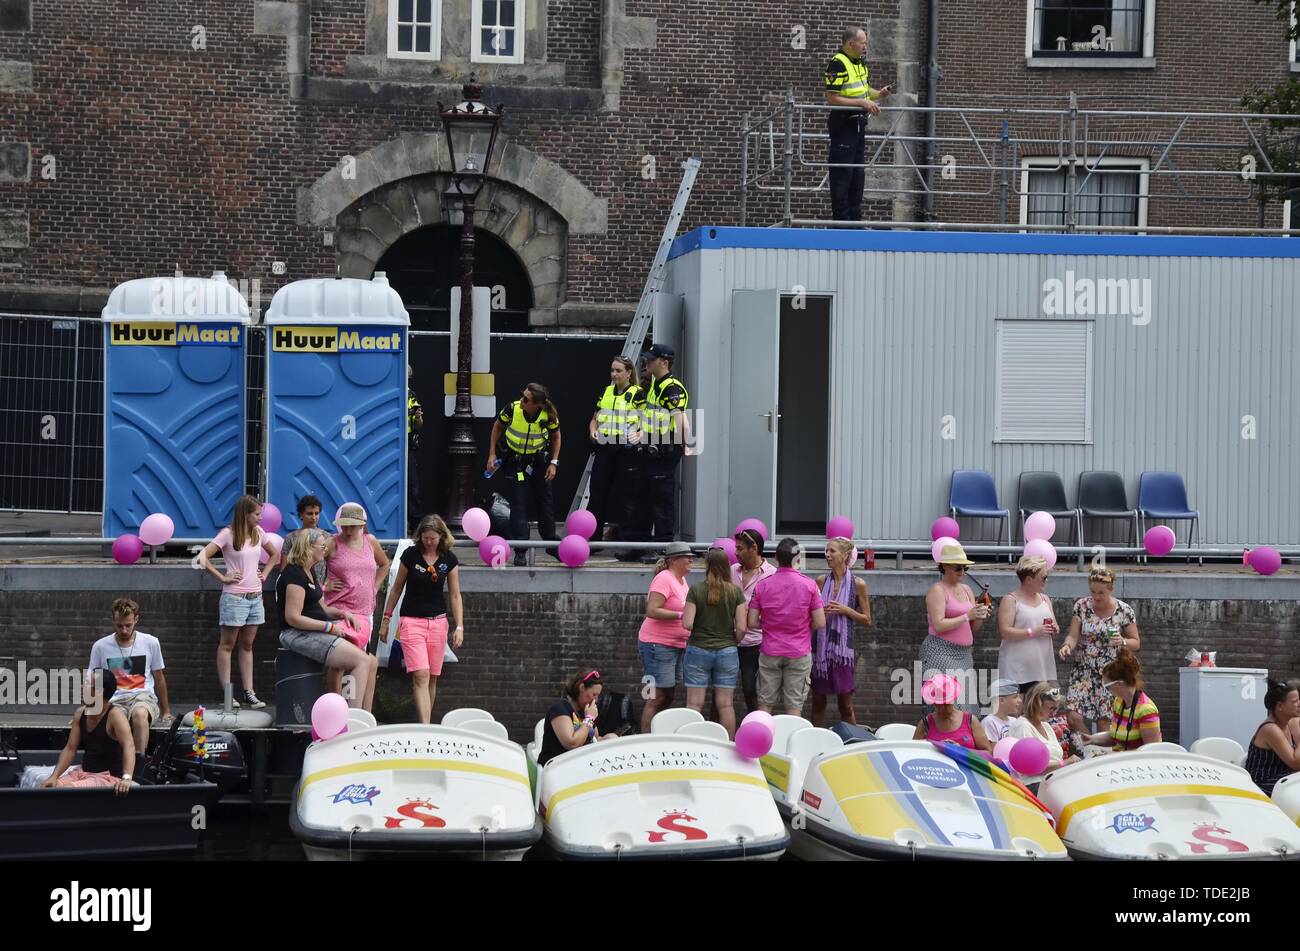 Die Prinsengracht mit der festlichen Menge, Polizisten und Parkplatz Pedalos, zur Zeit der Stolz Boot Parade 2018, eine jährliche öffentliche Veranstaltung Stockfoto